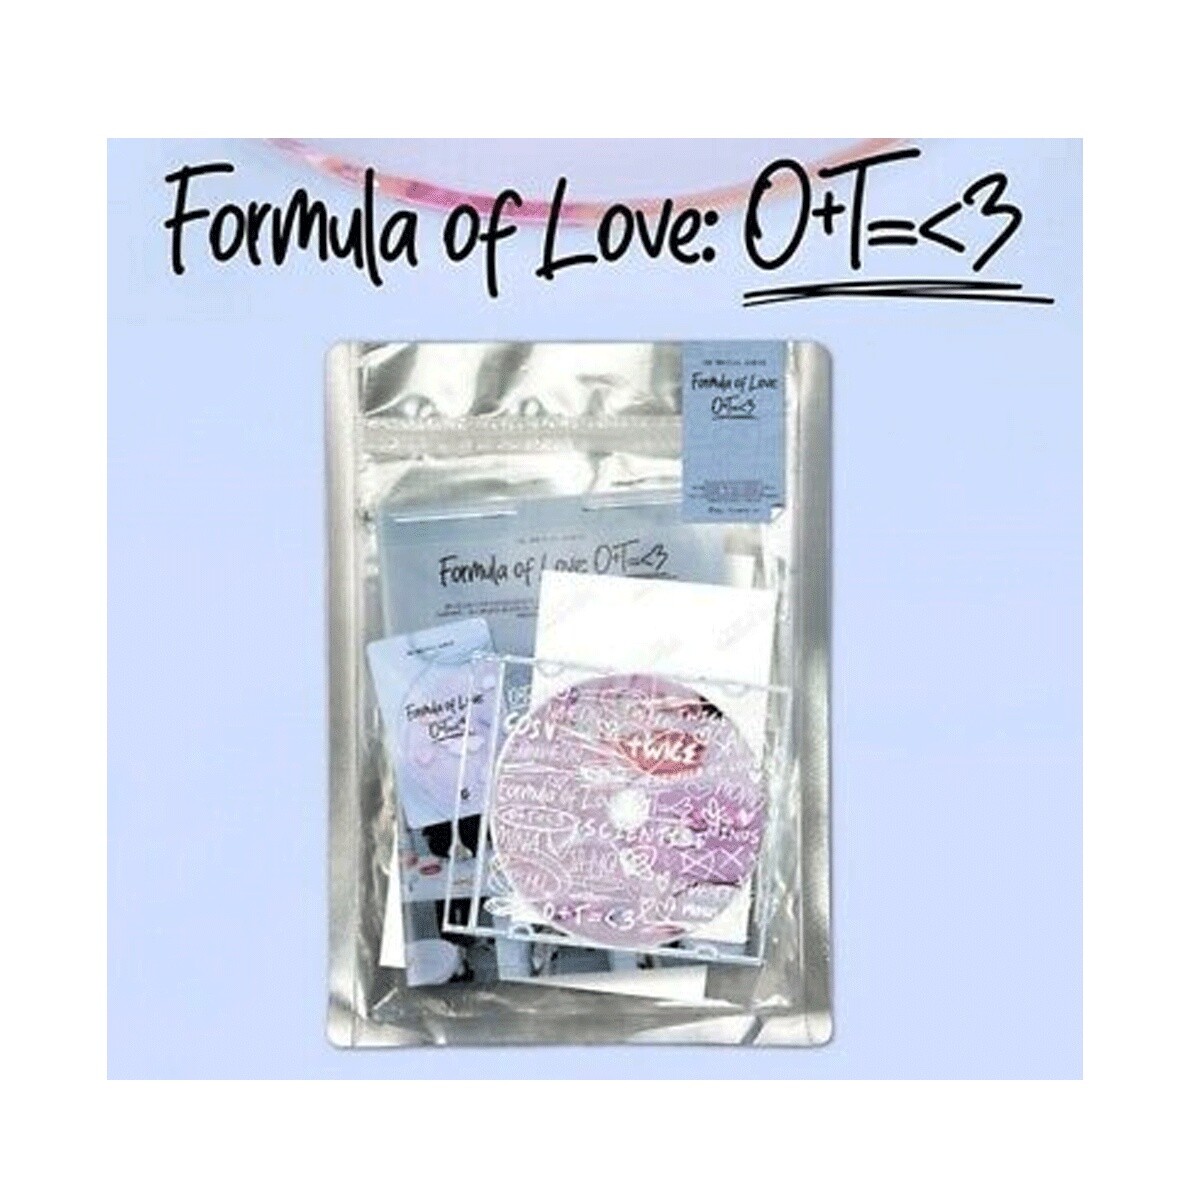 Twice Formula Of Love: O+t= 